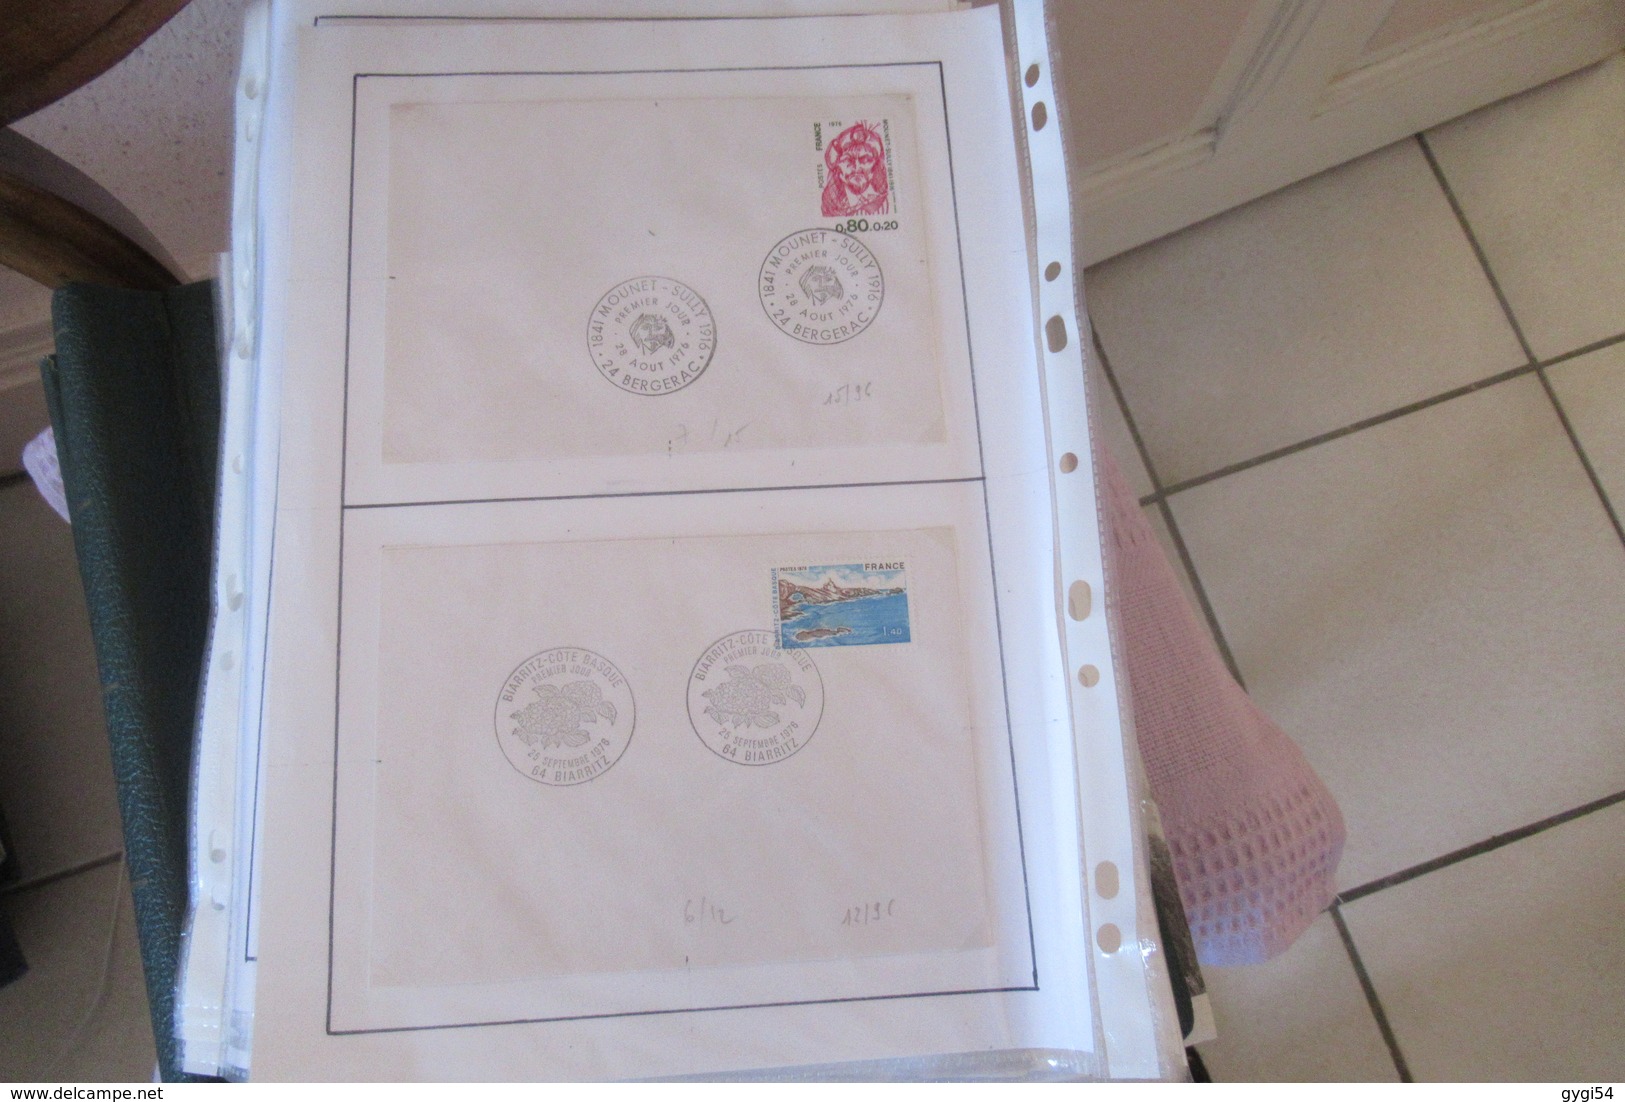 France timbres Oblitérés avec cachet sur lettre  de 1976 - 1982      73  scans